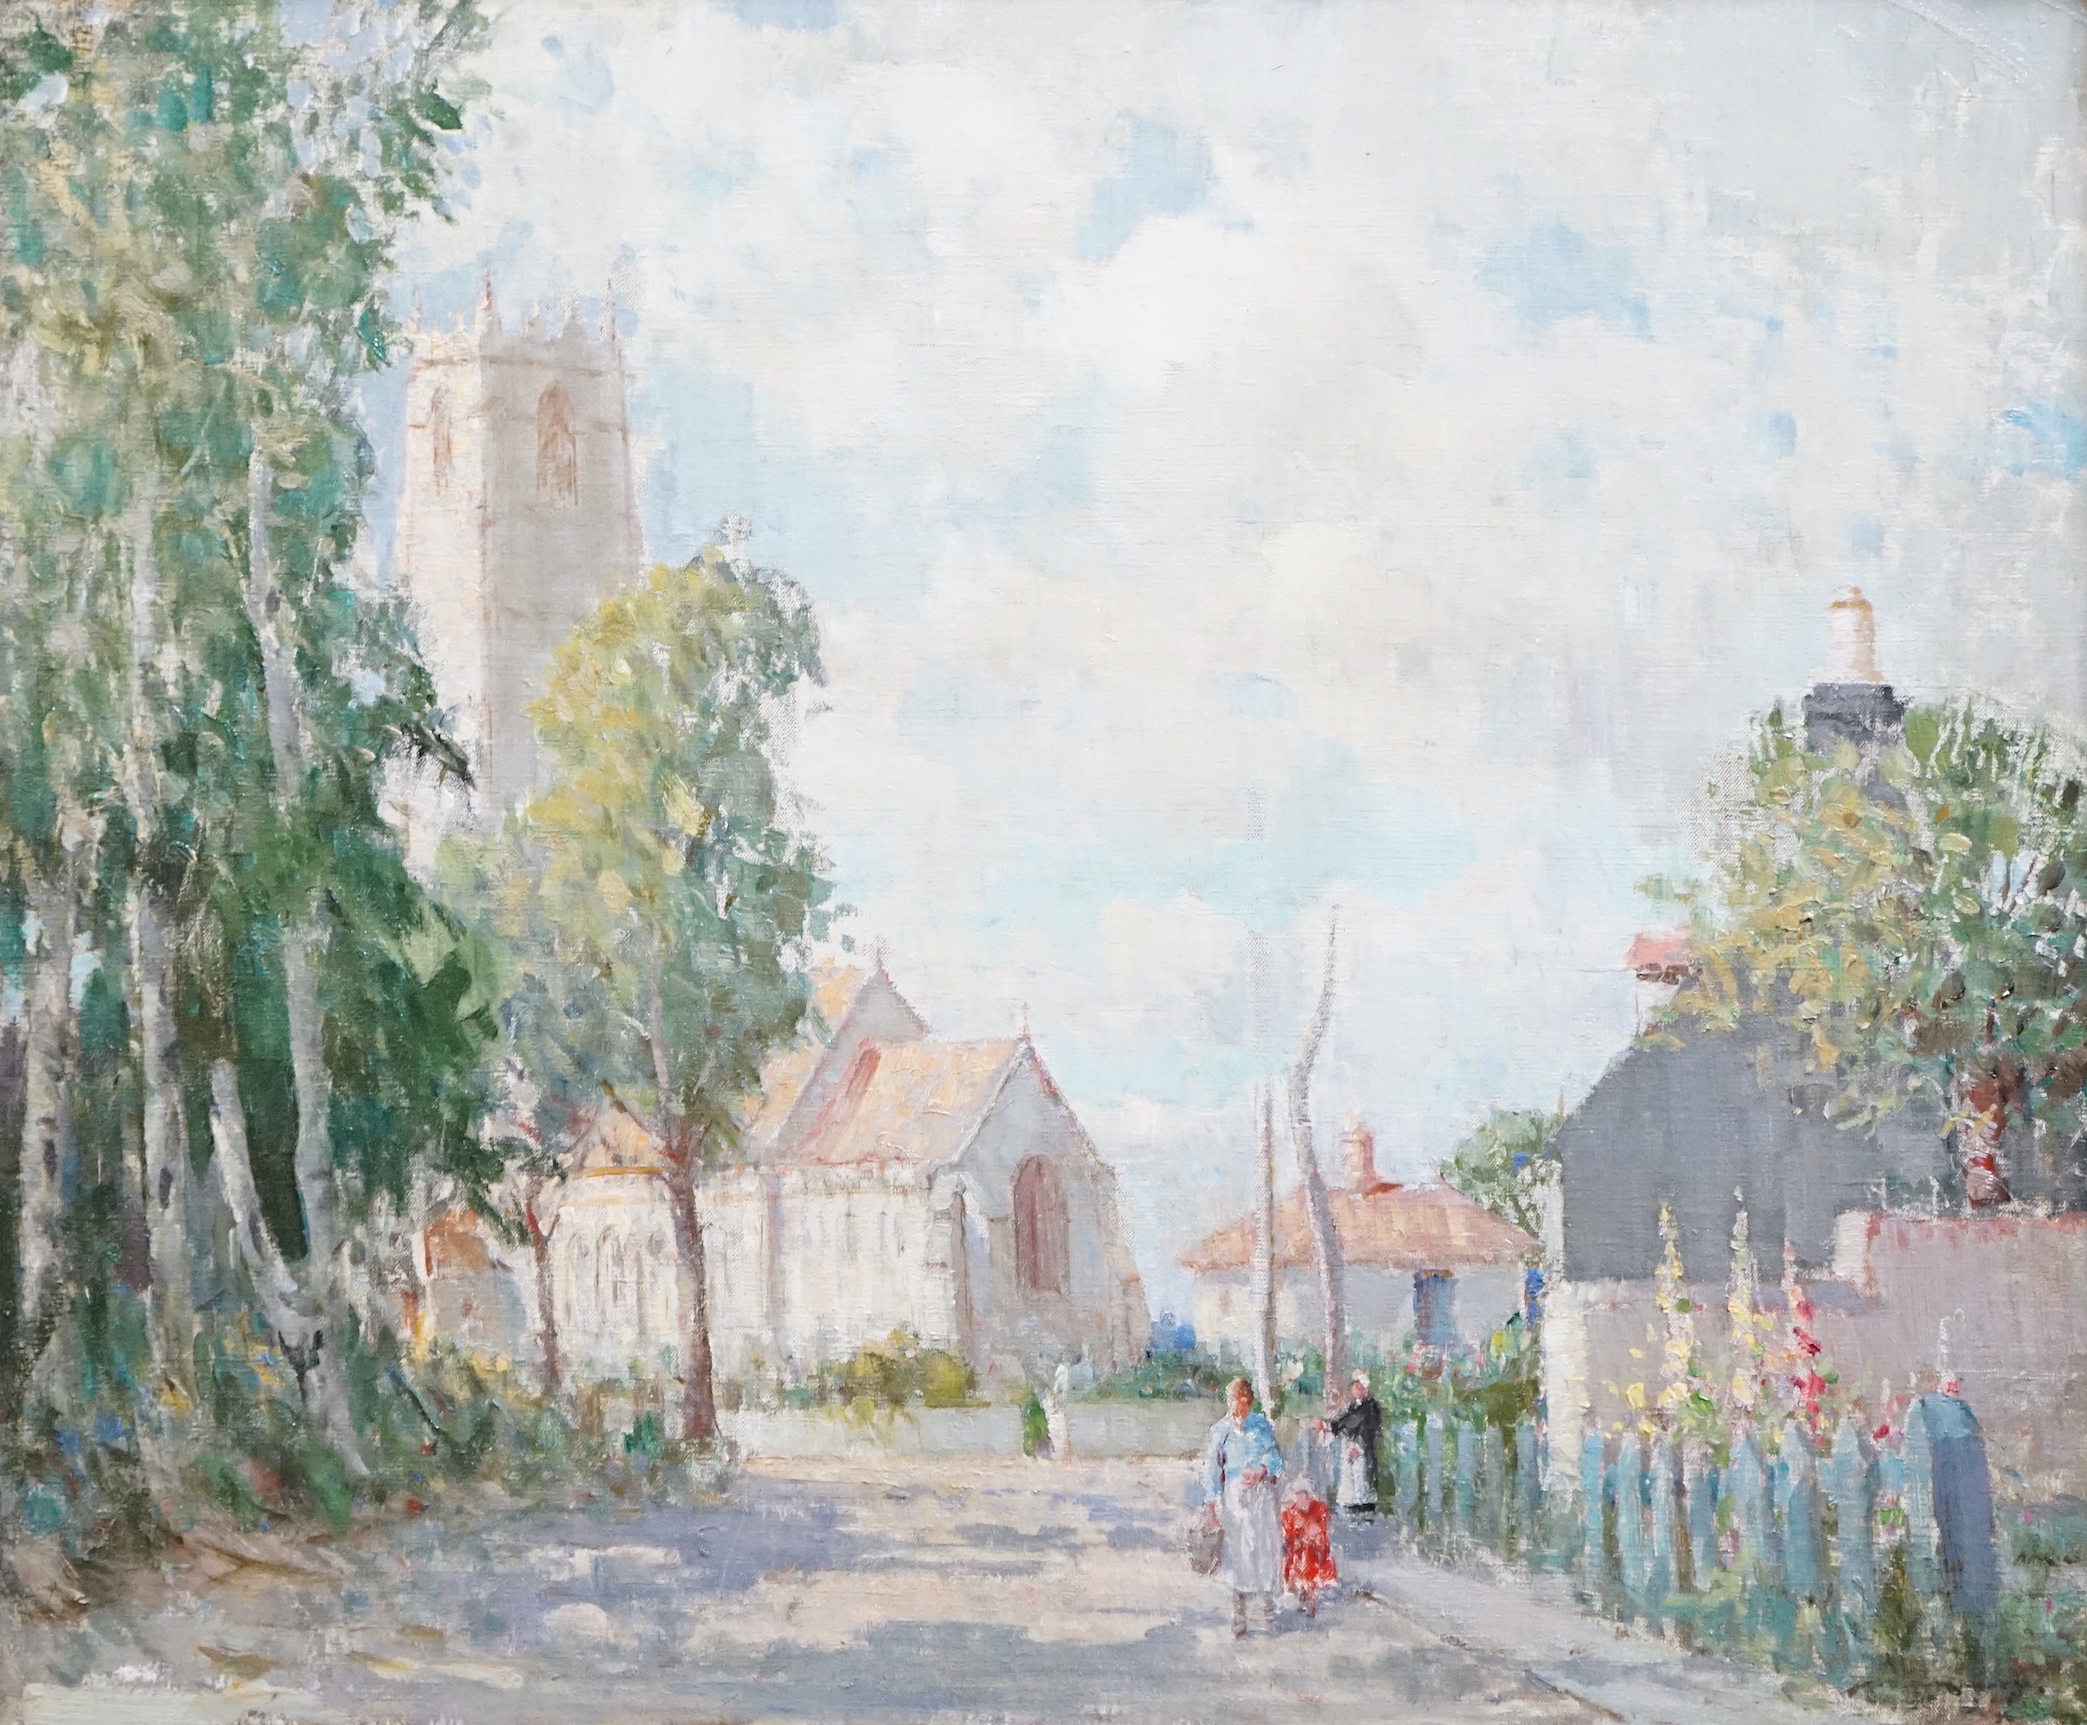 William Lee Hankey (British, 1869-1952), 'Winterton, Norfolk', oil on canvas, 51 x 60cm